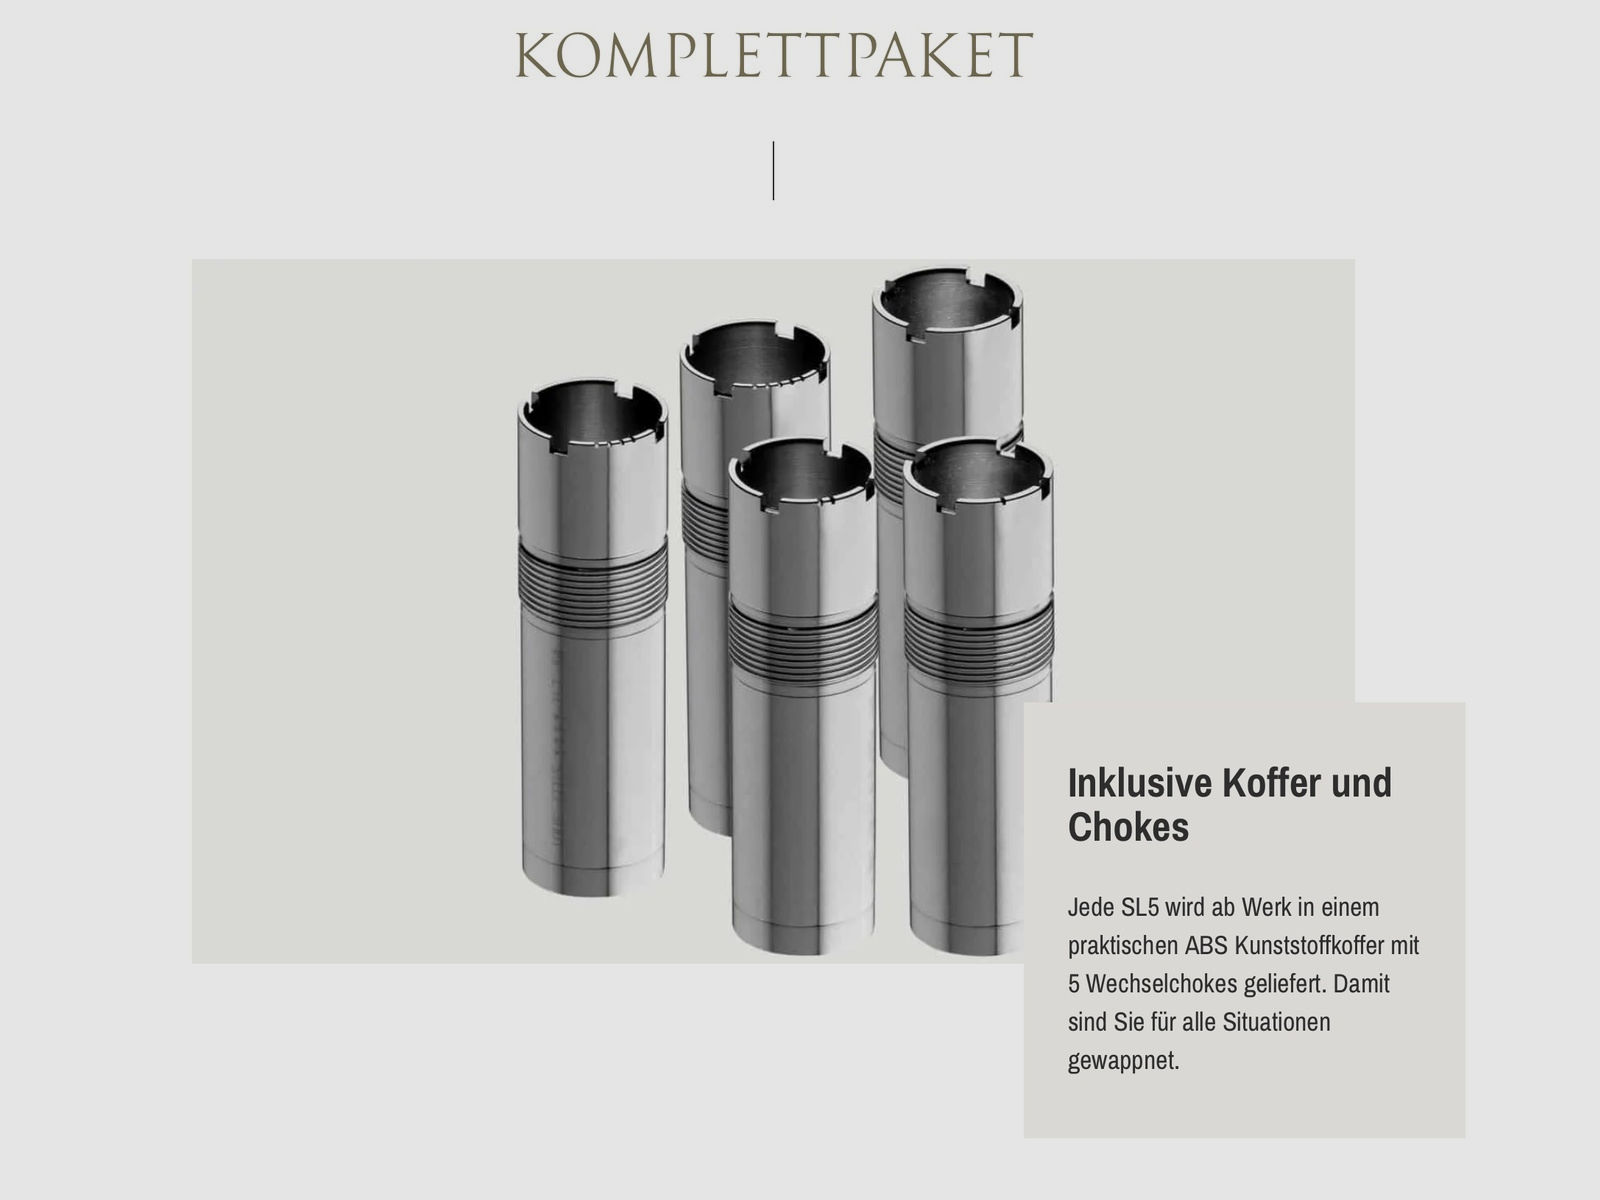 SAUER Selbstladeflinte SL5 Select Kaliber 12/76 76cm Lauflänge Wechselchokes Angebotspaket